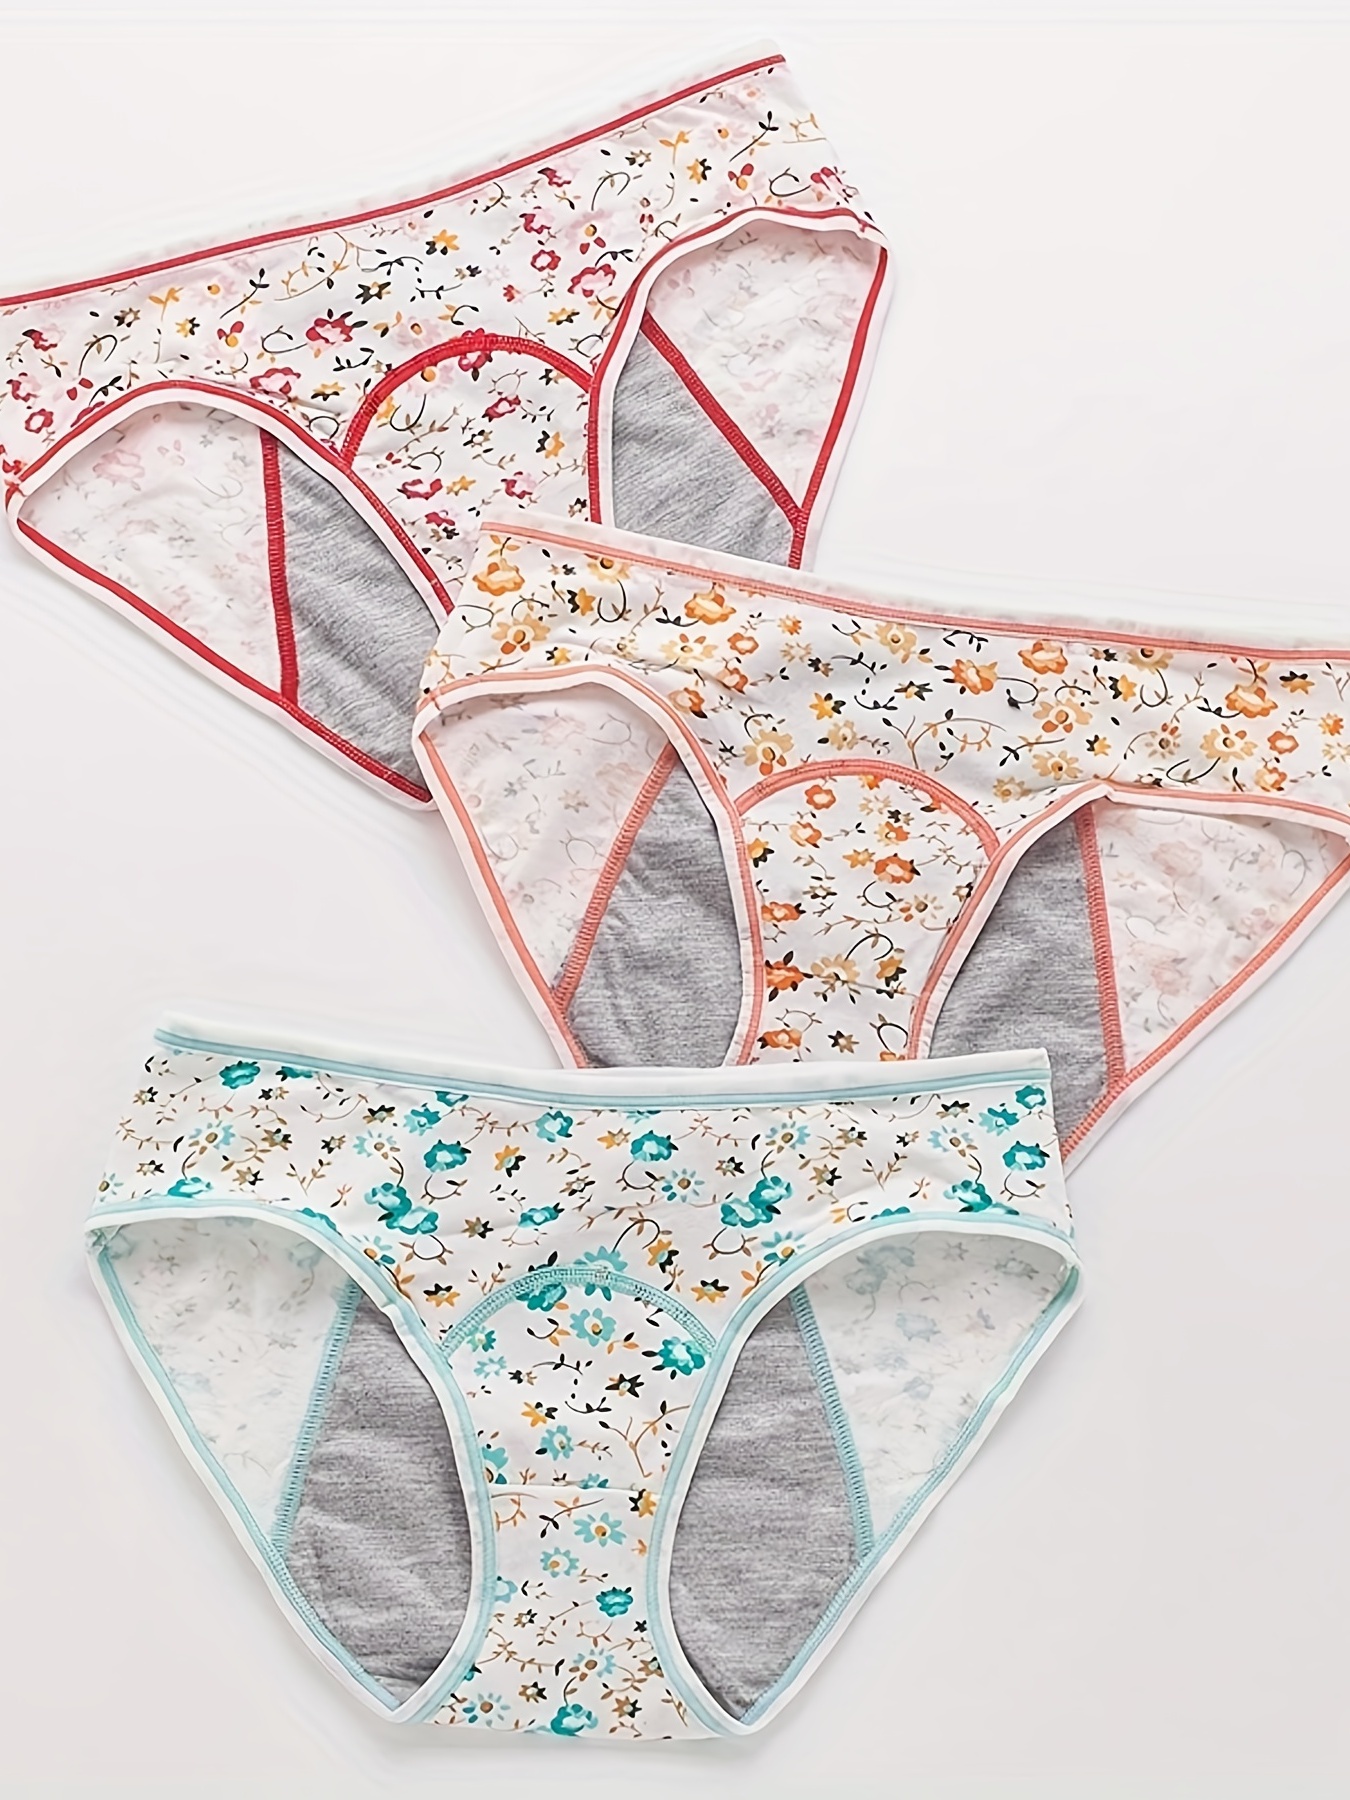 3pcs Floral Print Period Panties, Comfy & Breathable Leak Proof Intimates  Panties, Cute Menstrual Panties, Women's Lingerie & Underwear